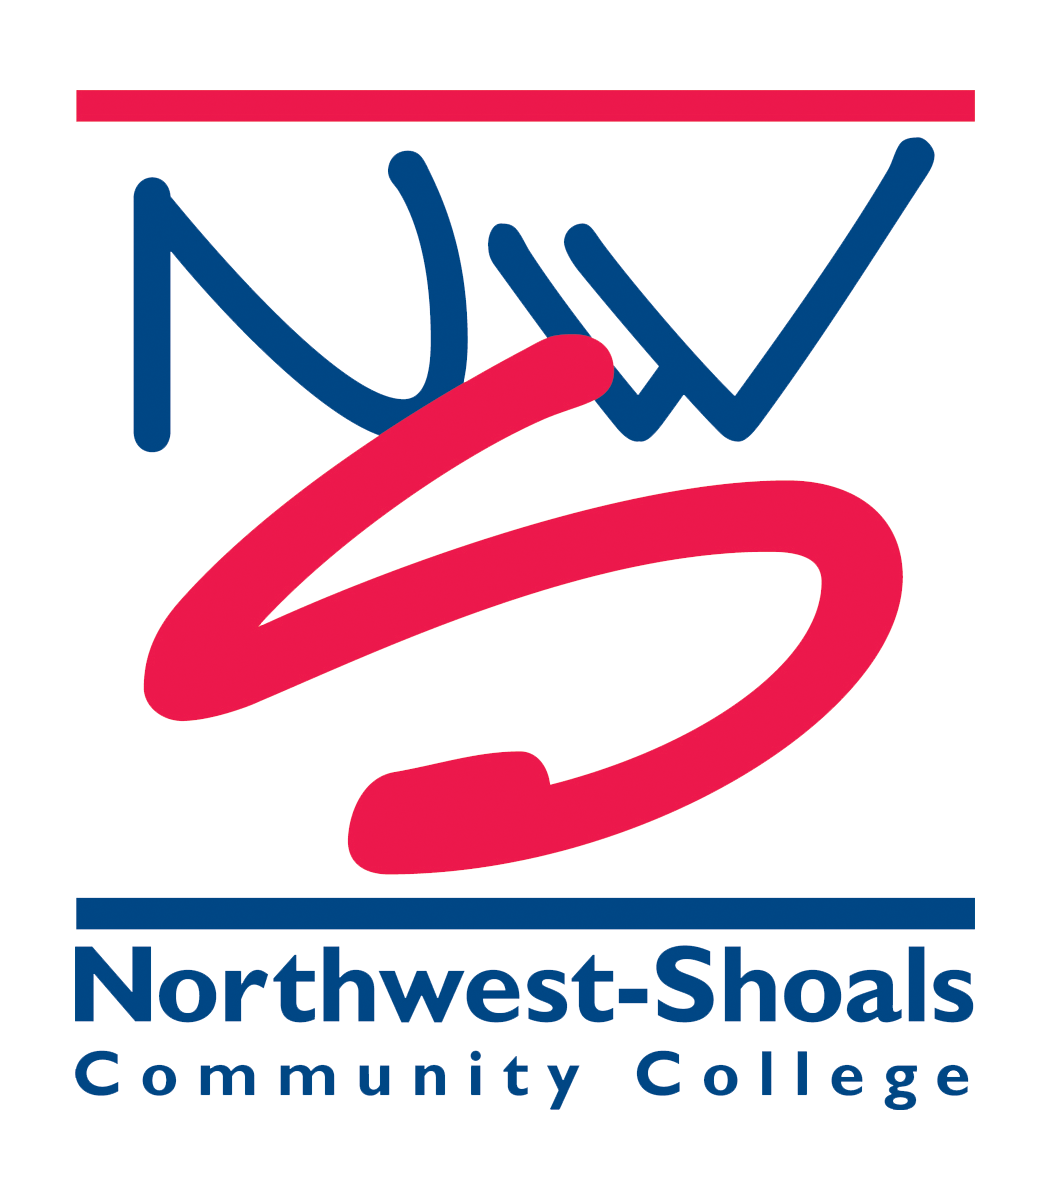 Northwest Shoals Community College